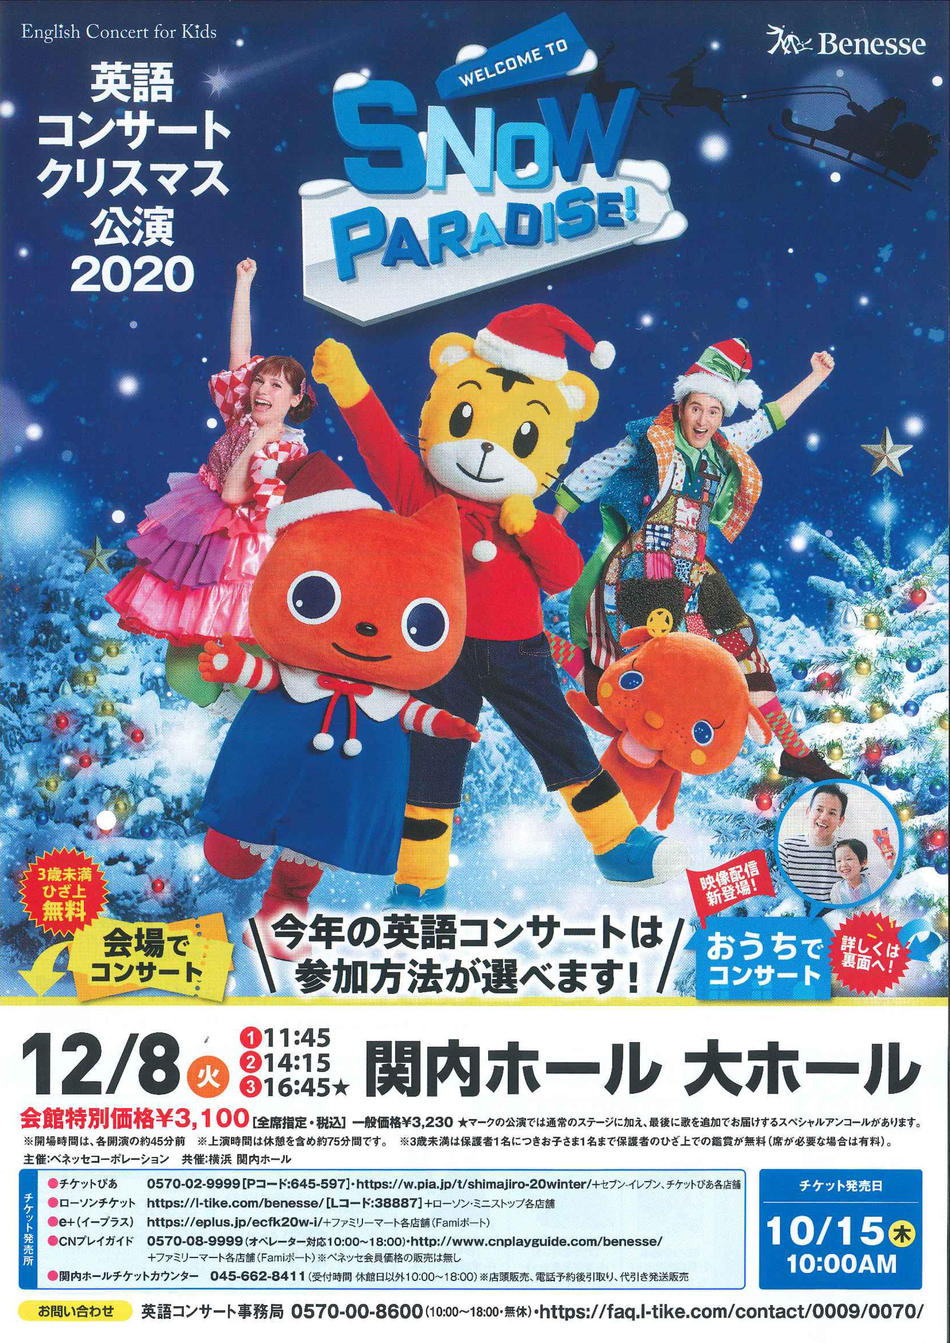 ベネッセ英語クリスマスコンサート公演2020 | 横浜関内ホール 公式サイト